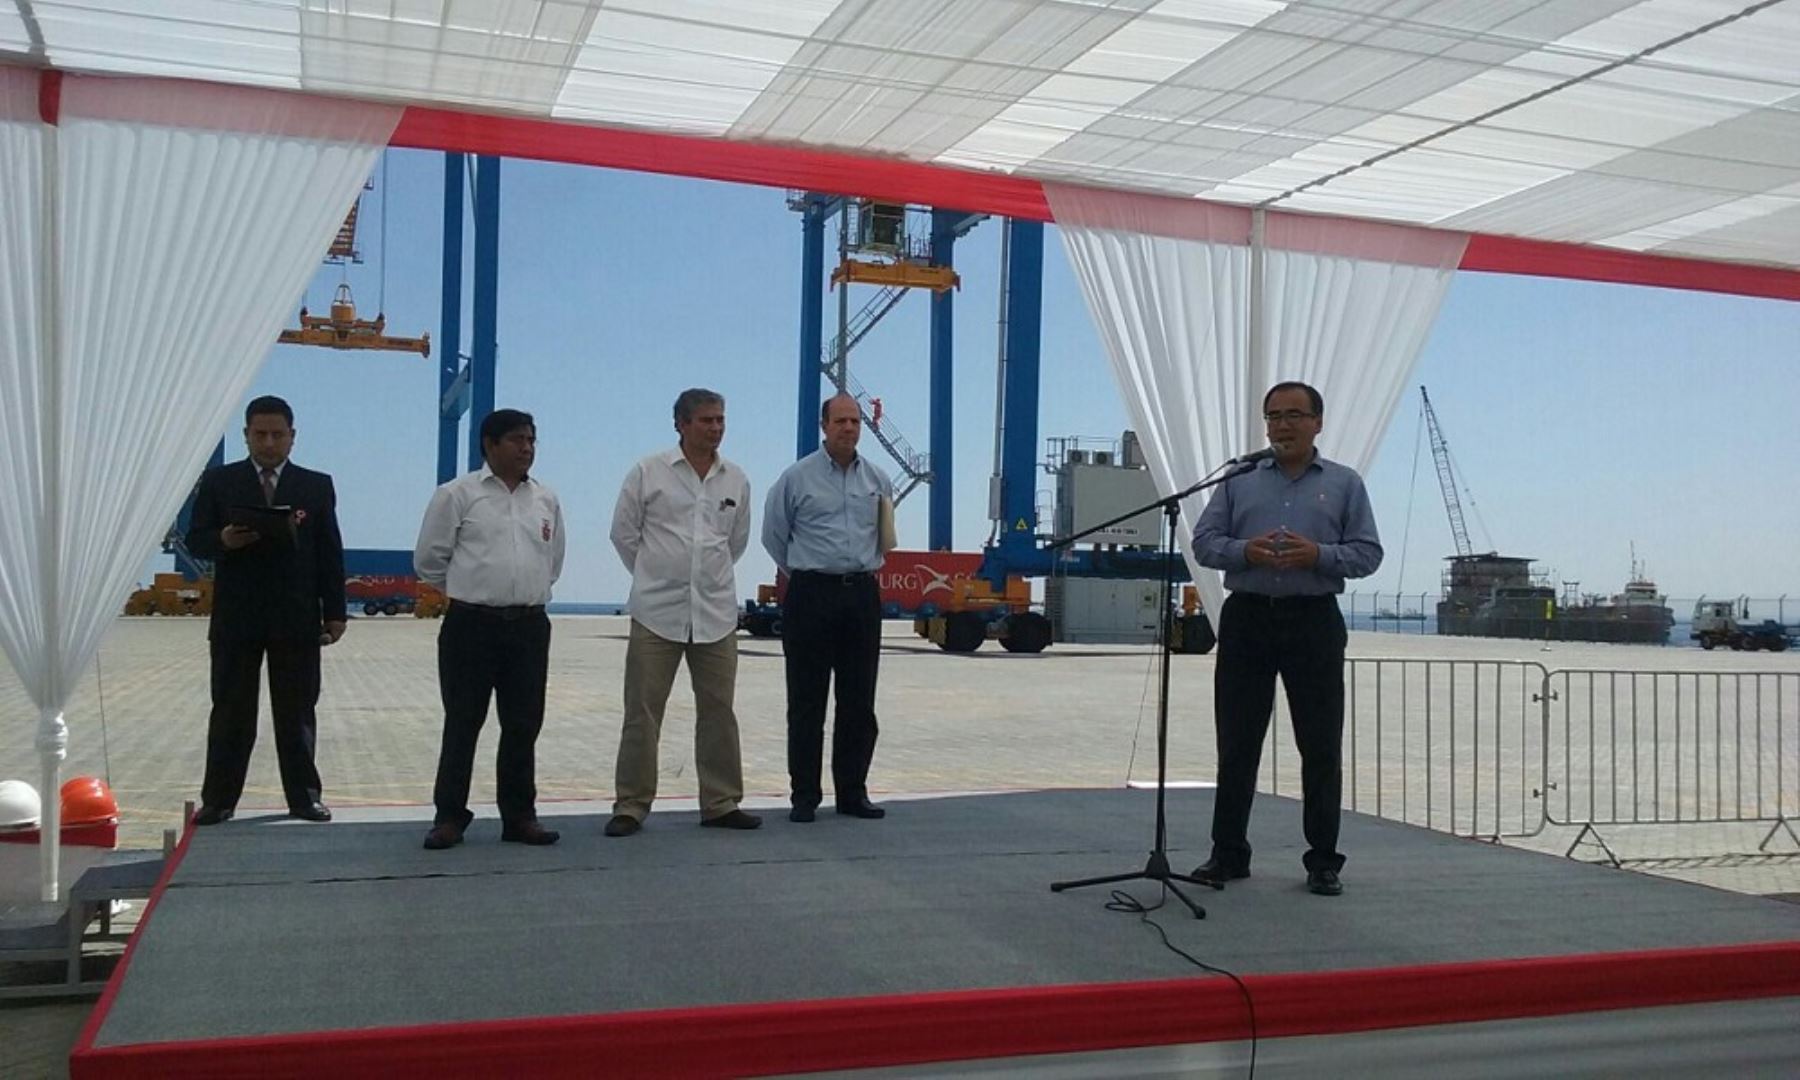 El ministro de Transportes y Comunicaciones, José Gallardo Ku, presidió en Piura la ceremonia de inicio de operación de tres nuevas grúas pórtico en el puerto de Paita, cuya puesta en servicio forma parte de los compromisos y obras de la segunda etapa de inversión en este terminal.